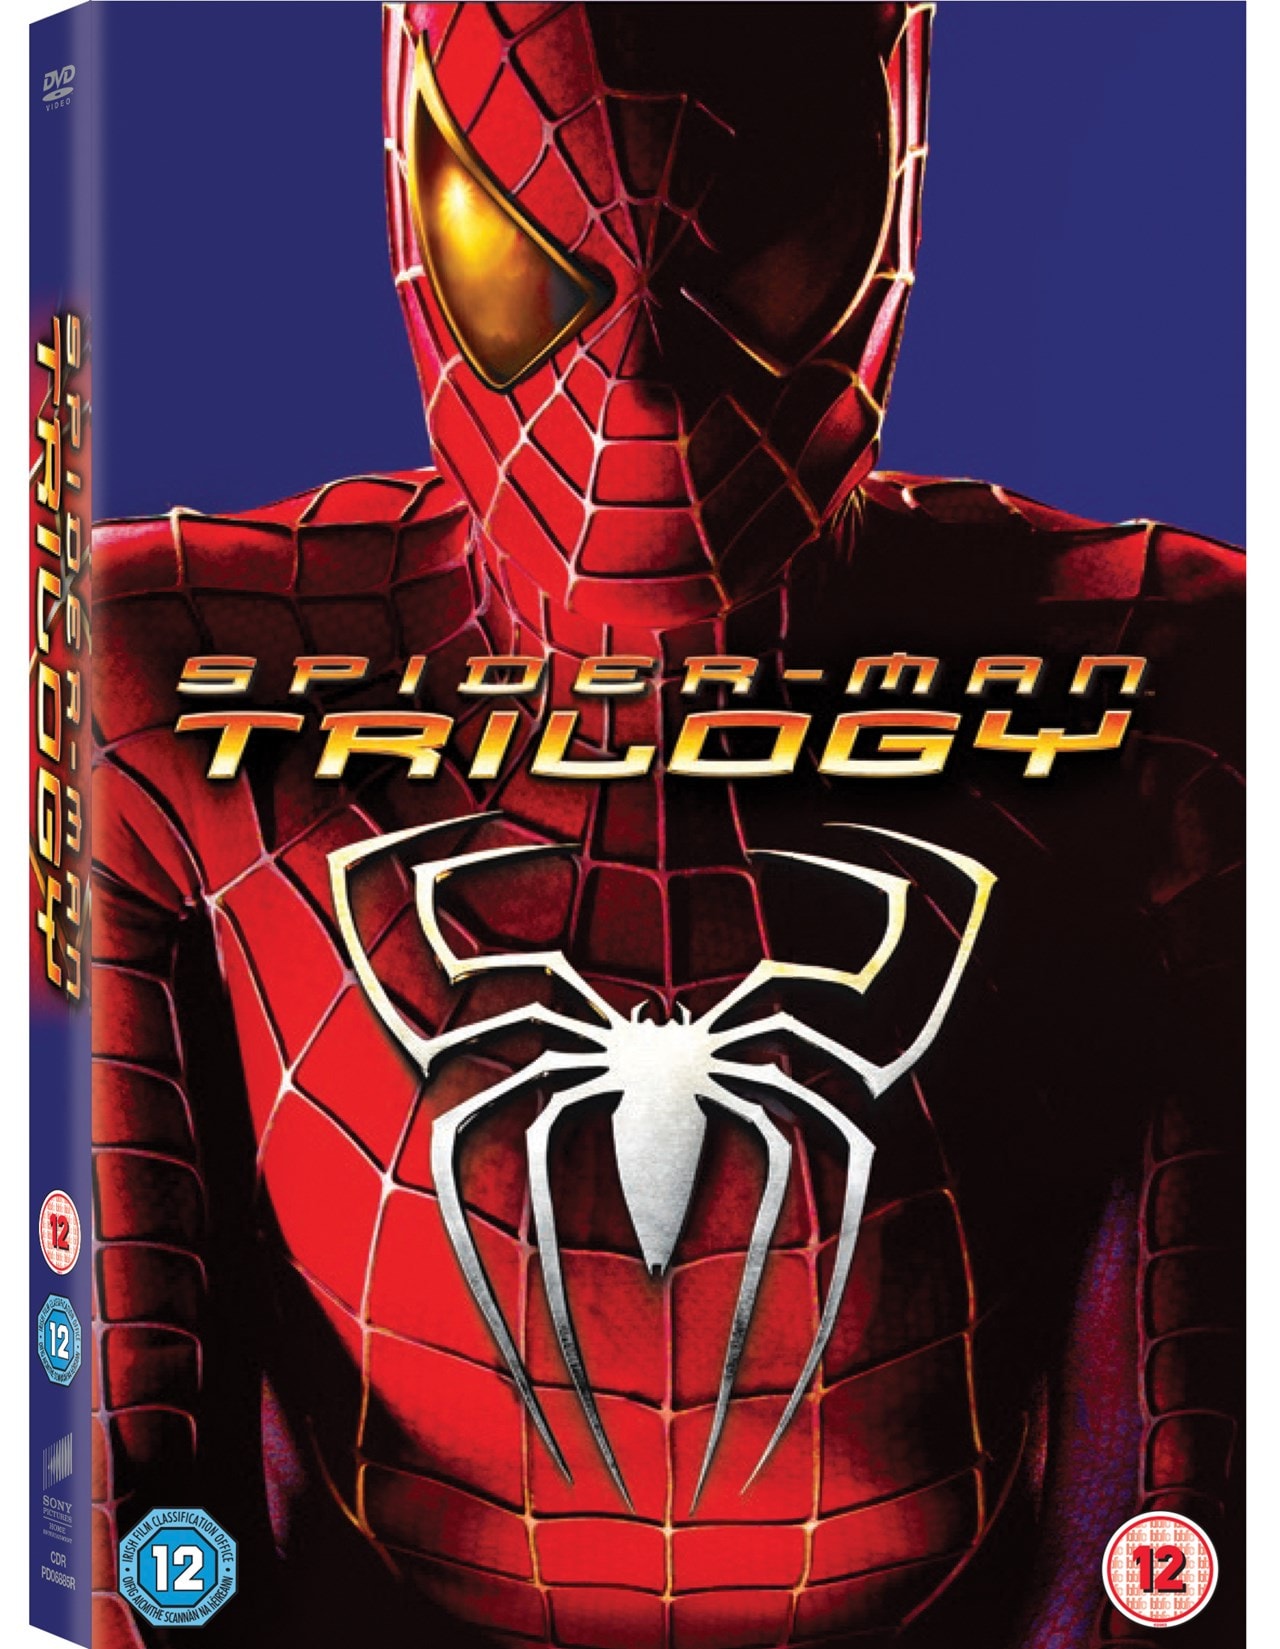 Spider Man Trilogy First Three Spider Man Movies Trilogy Dvd Box